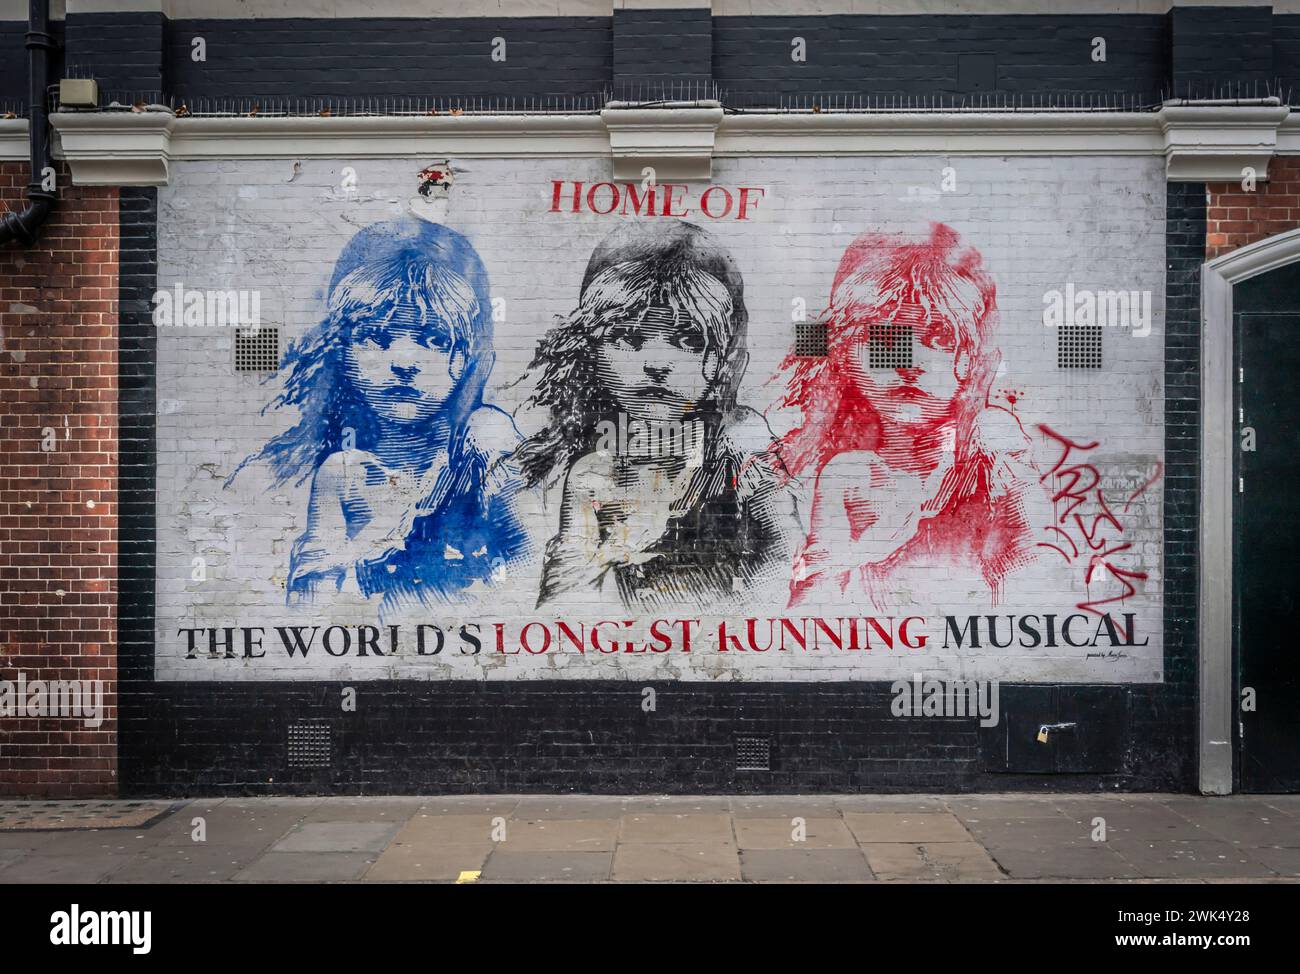 Les Miserables pochoir art mural dans Wardour Street à Londres W1 Soho, Angleterre, Royaume-Uni Banque D'Images